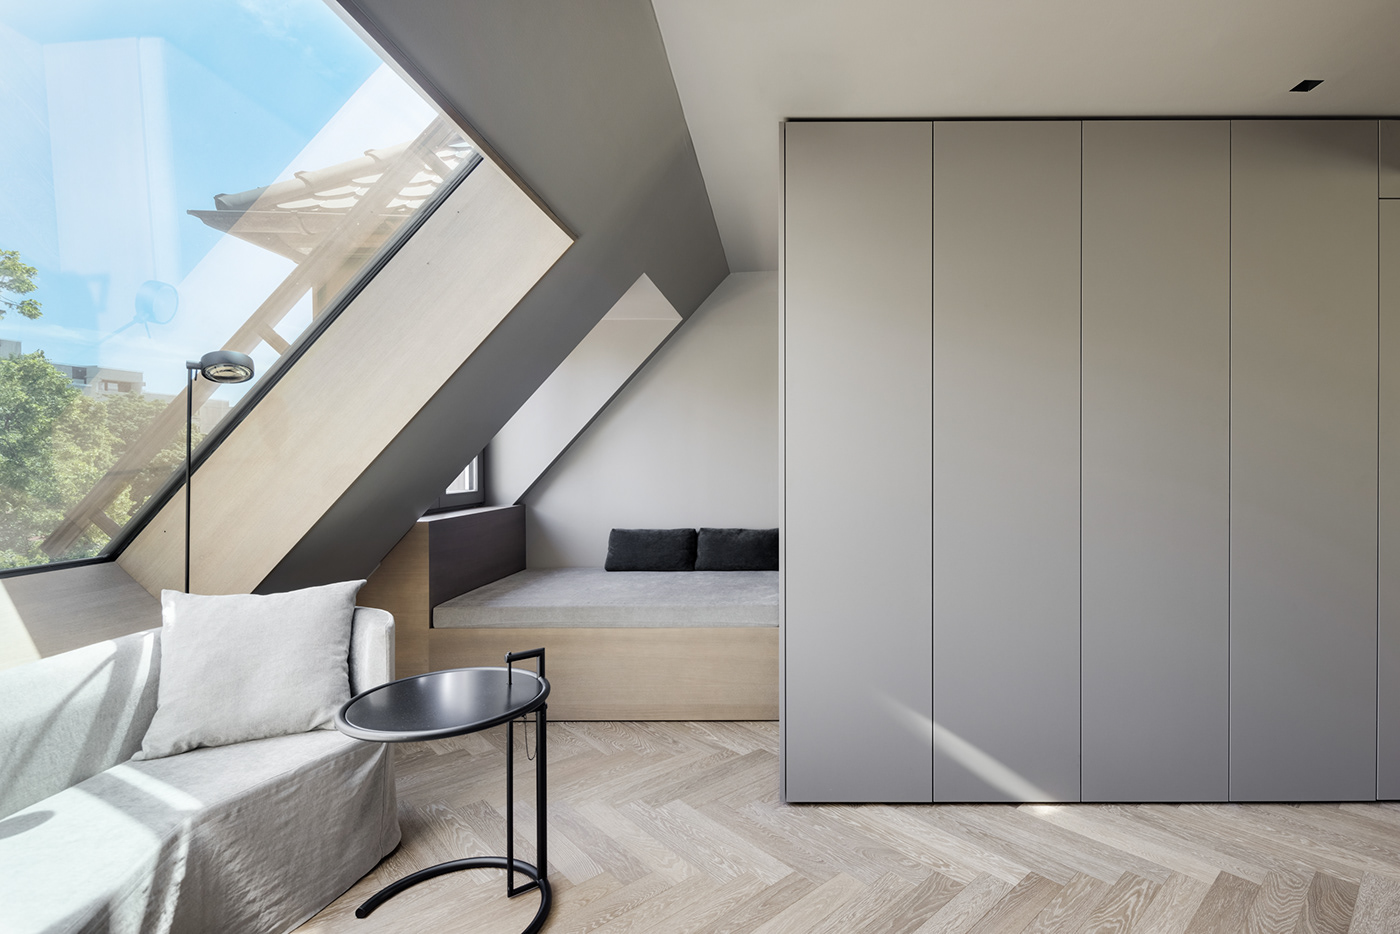 interiordesign modern architecture Ausbau cleandesign Dachgeschoss designapartment Innenarchitektur Innenausbau